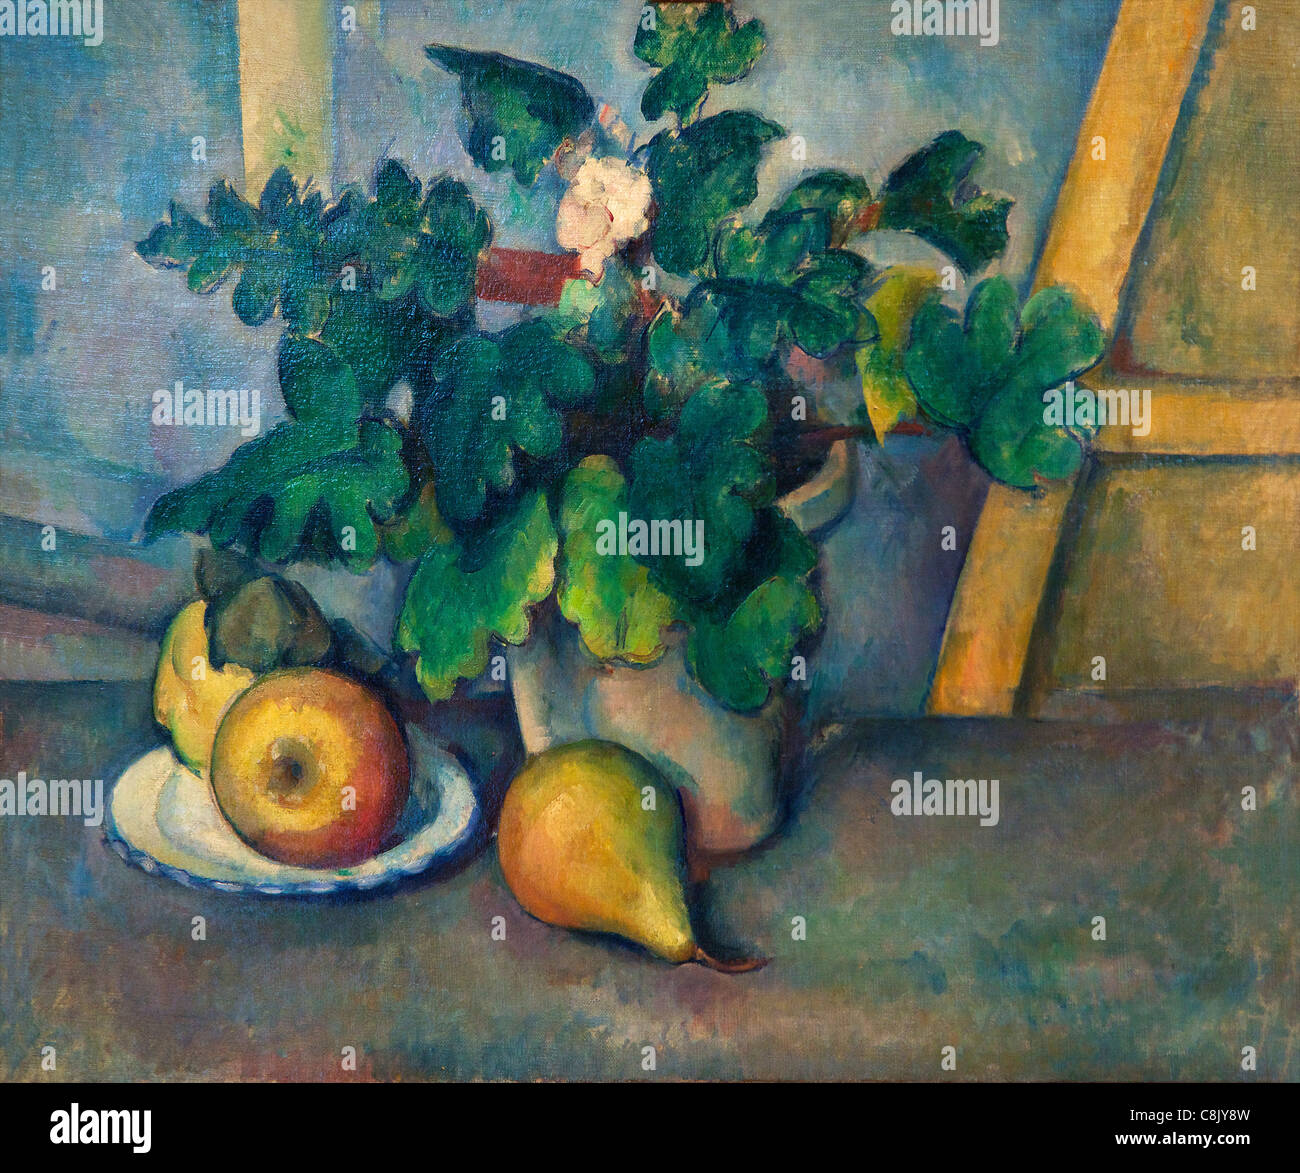 Pot de fleurs et les poires, de Paul Cézanne, 1888-90 Courtauld, galeries, Somerset House, Londres, Angleterre, Royaume-Uni, Royaume-Uni, Banque D'Images